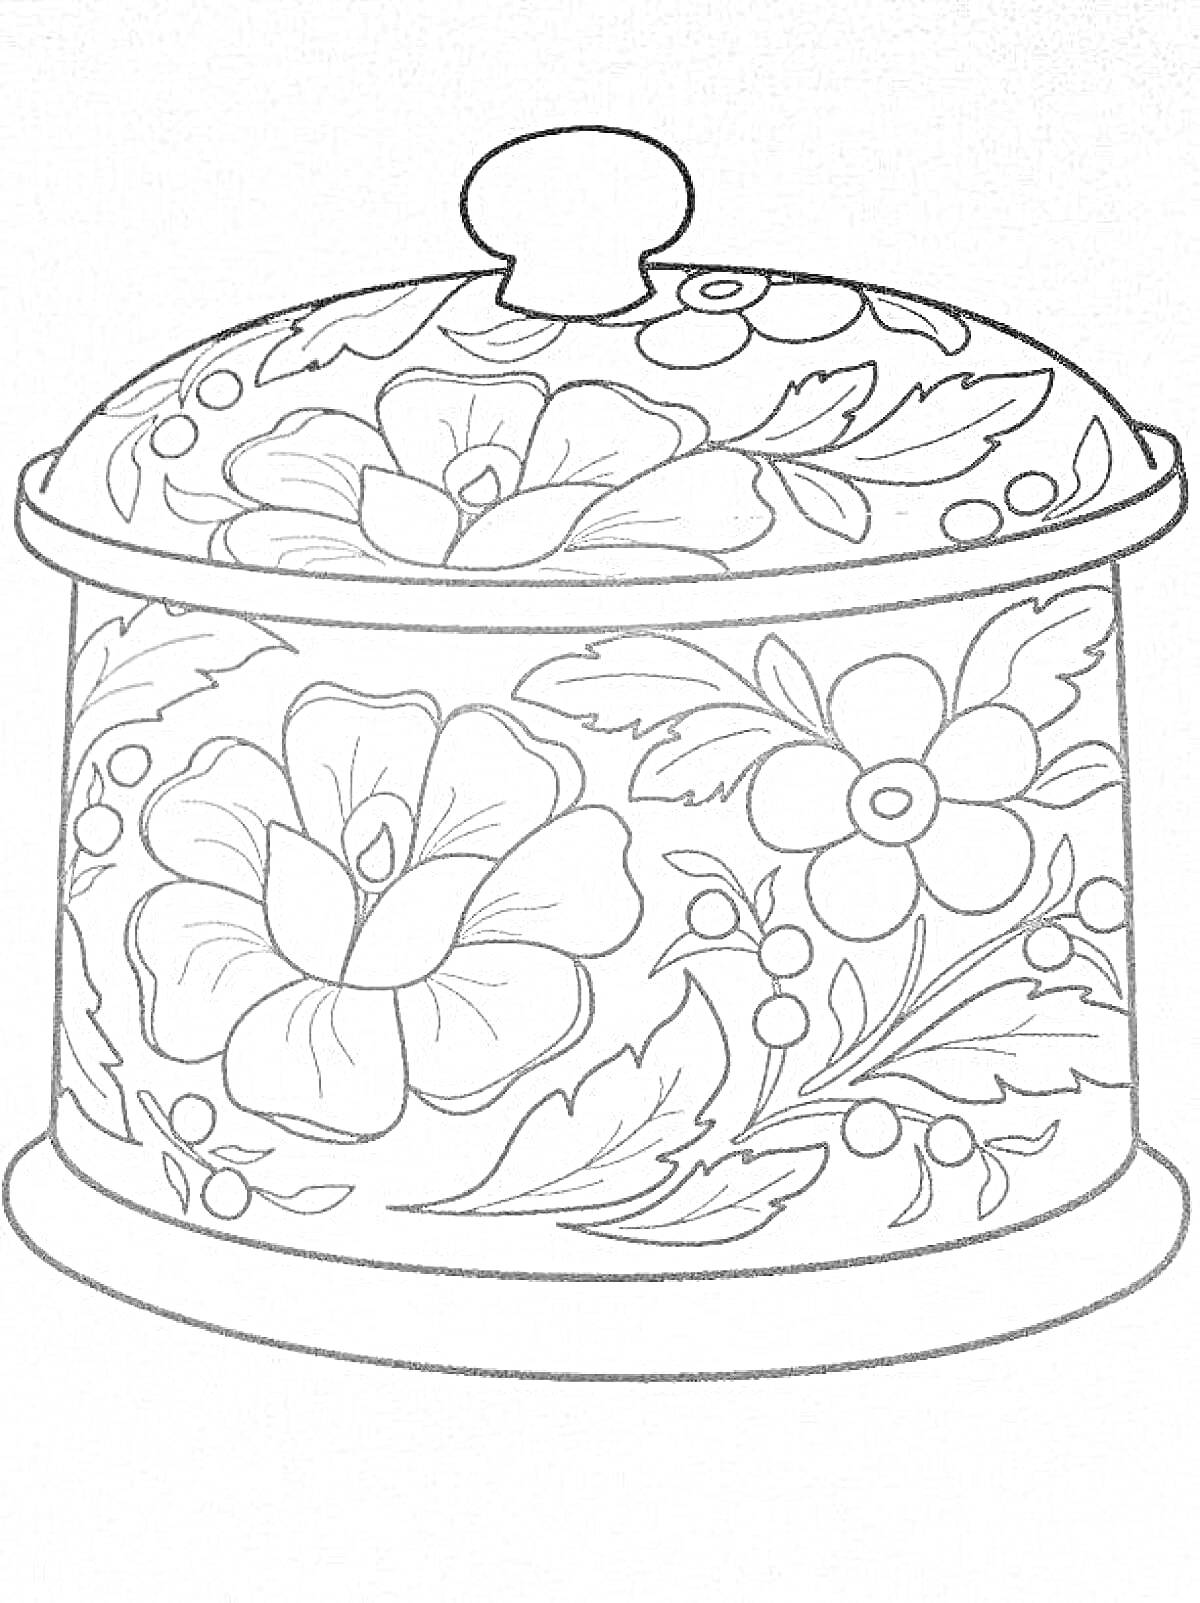 Раскраска хохломская банка с крышкой с цветочным узором и ягодами